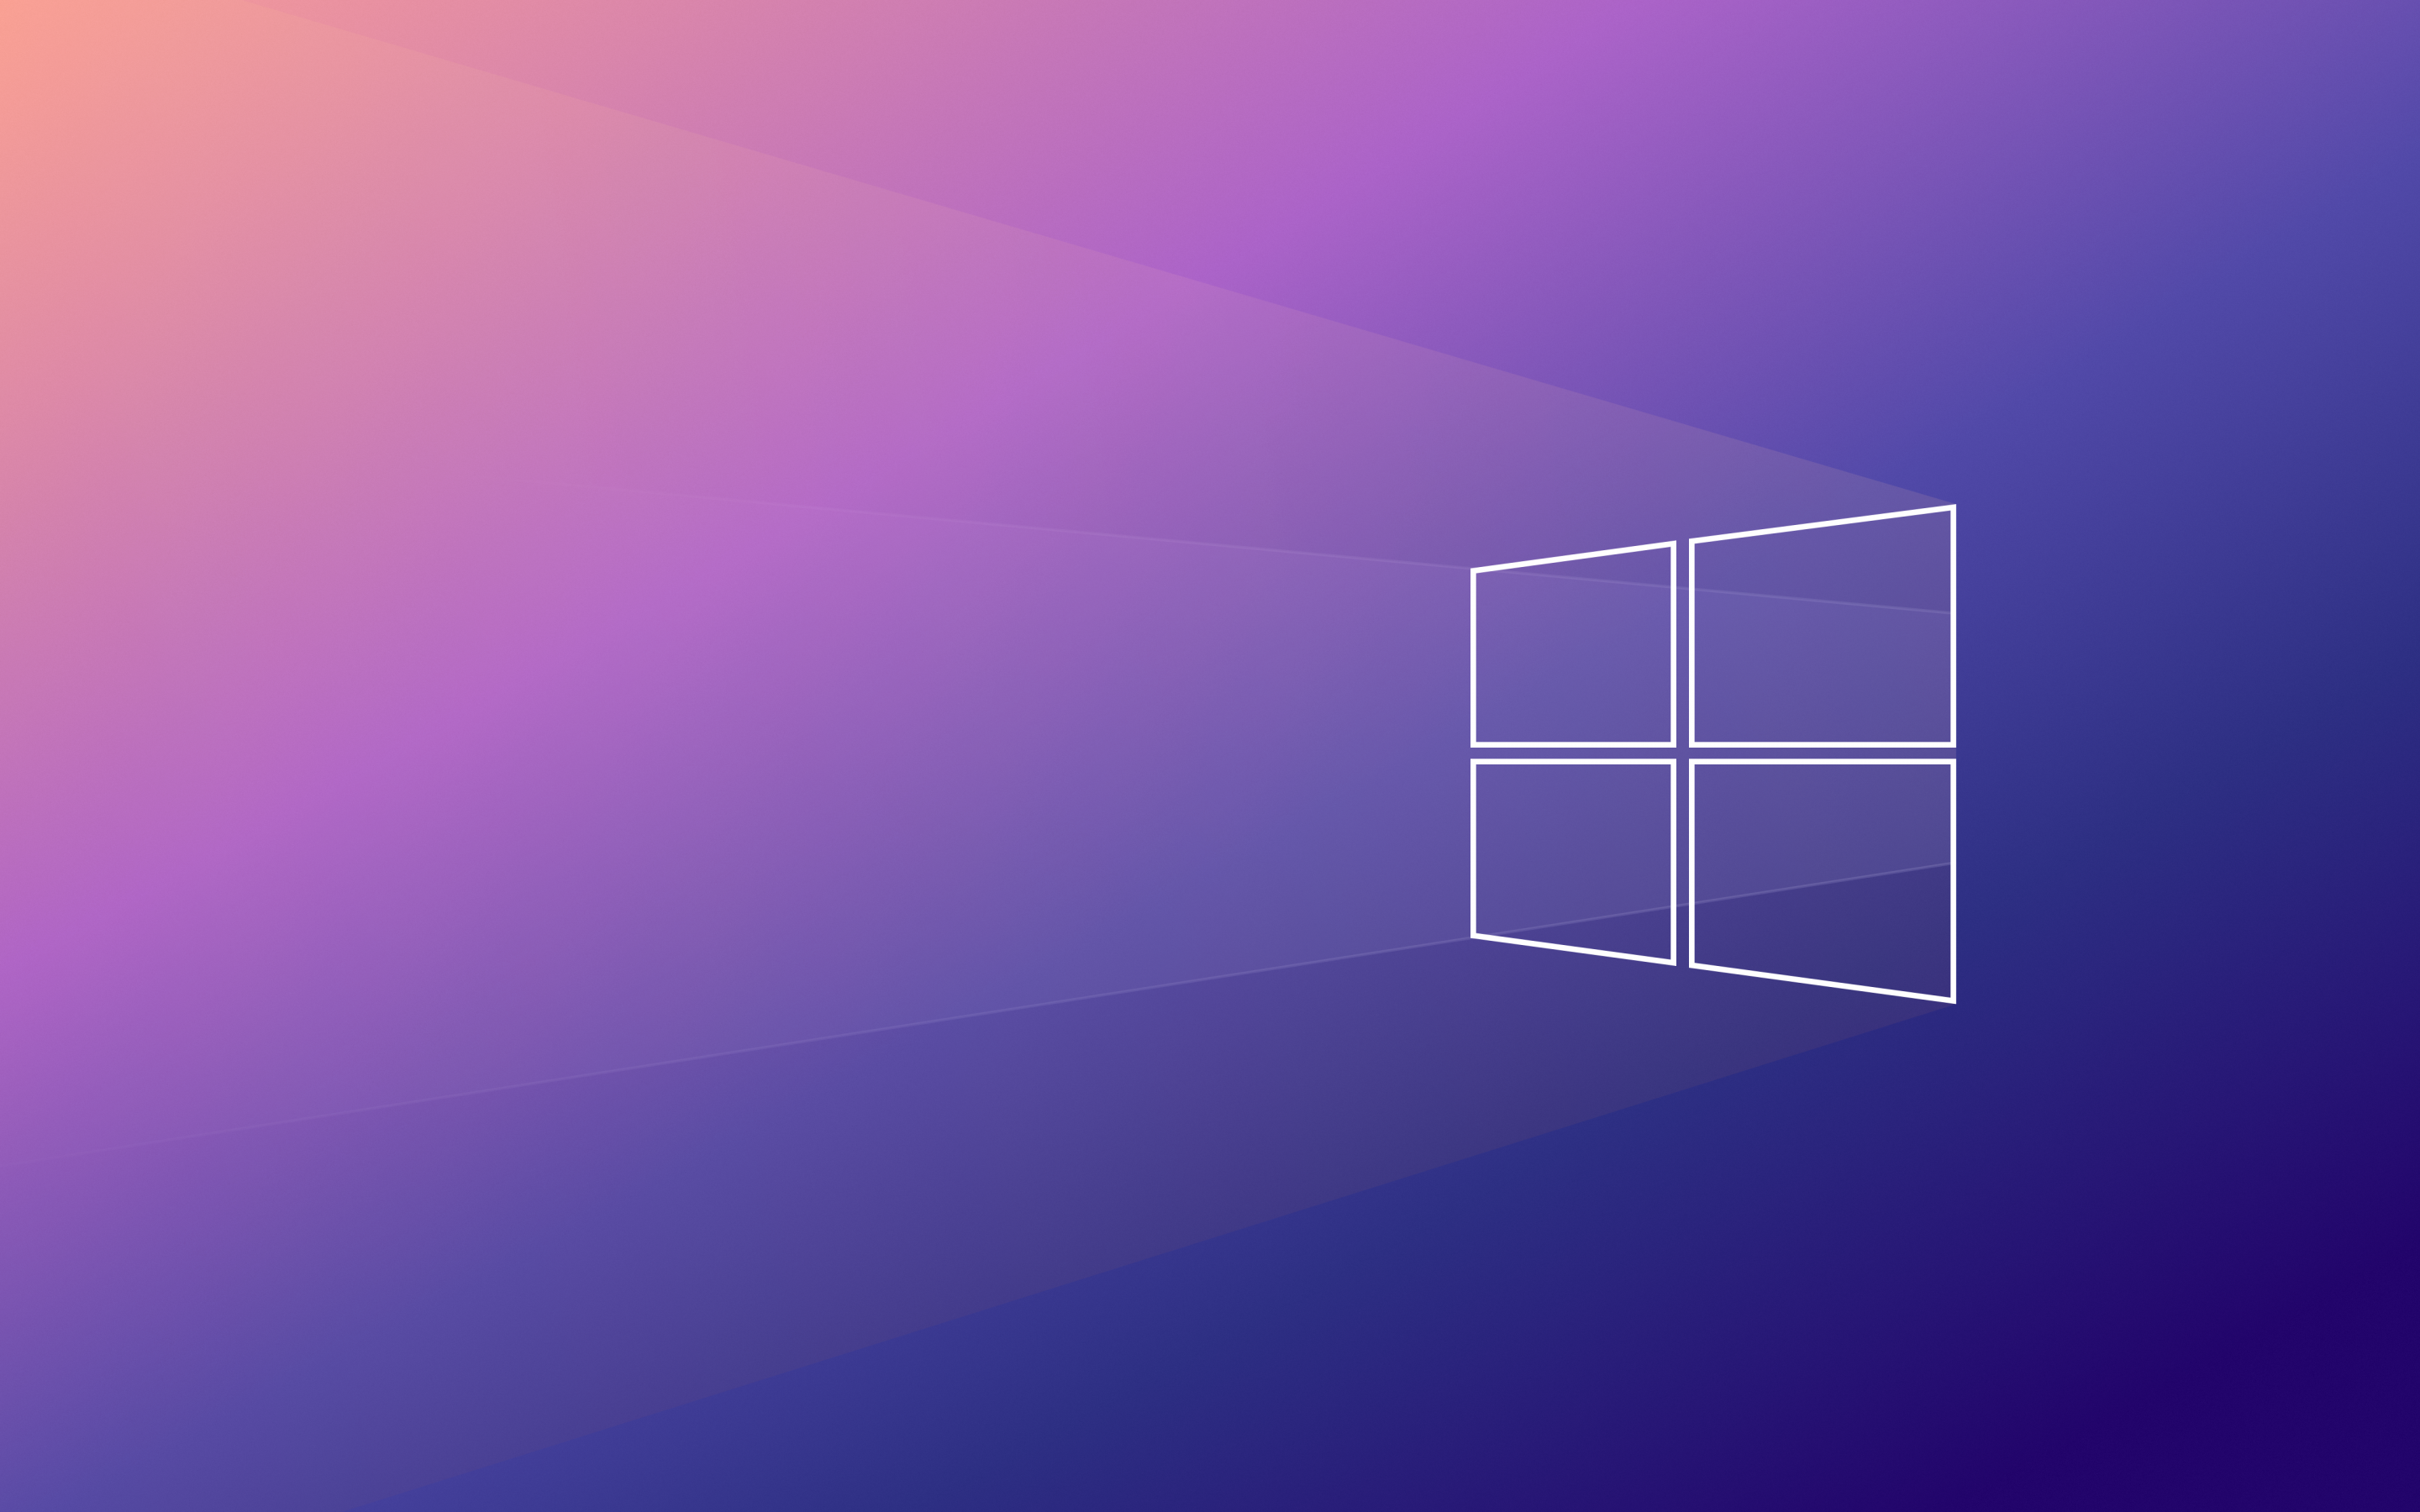 Hình nền Windows 10 4K, Nền Gradient, Công nghệ, #2218: Khám phá thế giới sống động với hình nền Windows 10 4K chất lượng cao và nền Gradient độc đáo. Được thiết kế với công nghệ tiên tiến, bạn sẽ không bao giờ phải lo lắng về độ phân giải hay độ sáng của màn hình nữa. Hãy nhấn vào hình ảnh để tận hưởng sự thư giãn và sáng tạo trong công việc và giải trí của bạn.